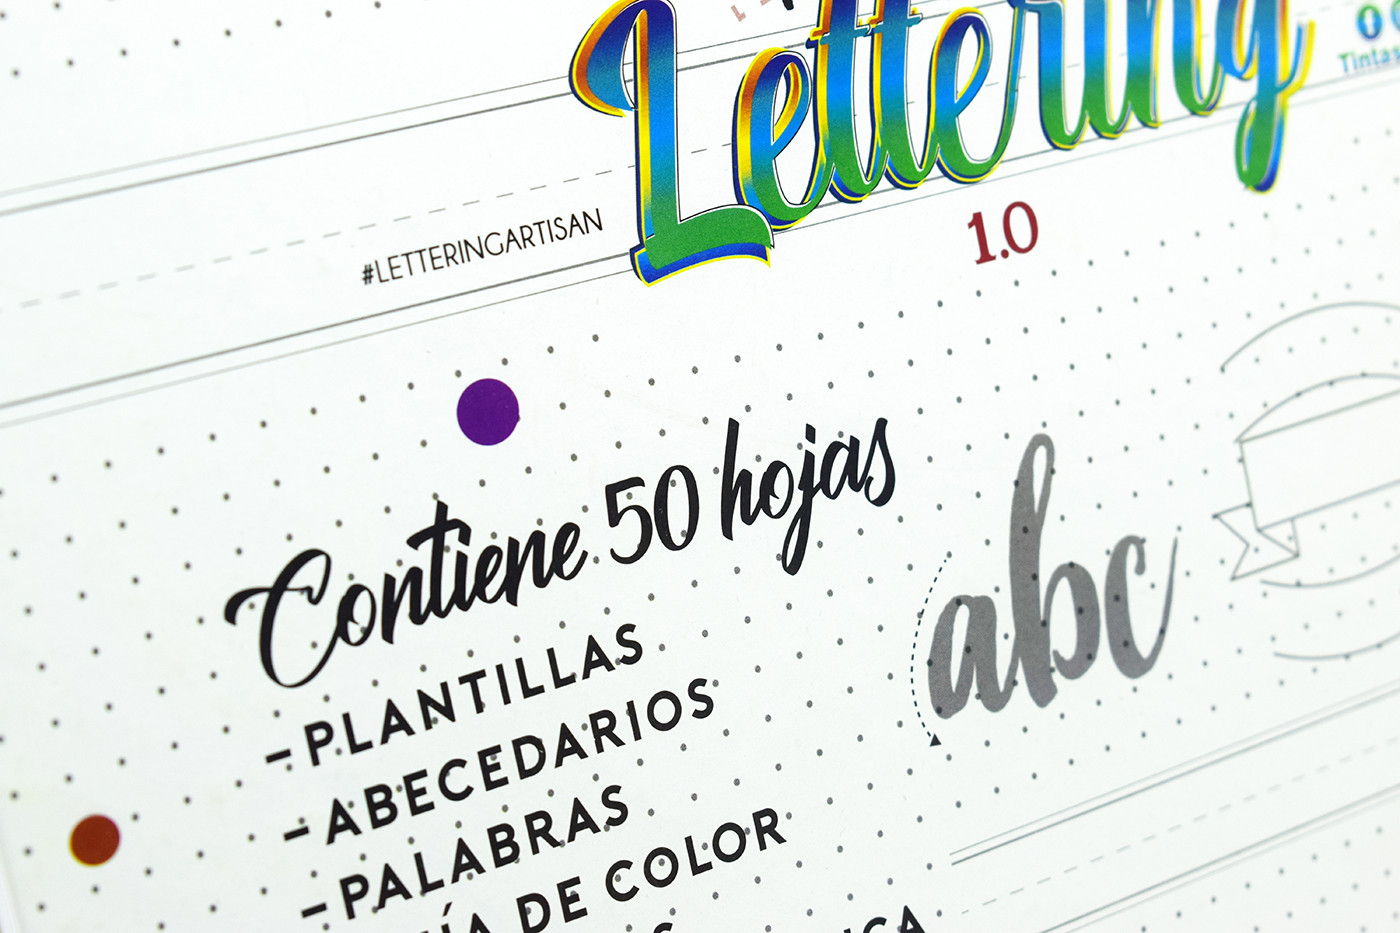 Imagen Guía Aprendiendo Lettering 1.0 Artisan 3